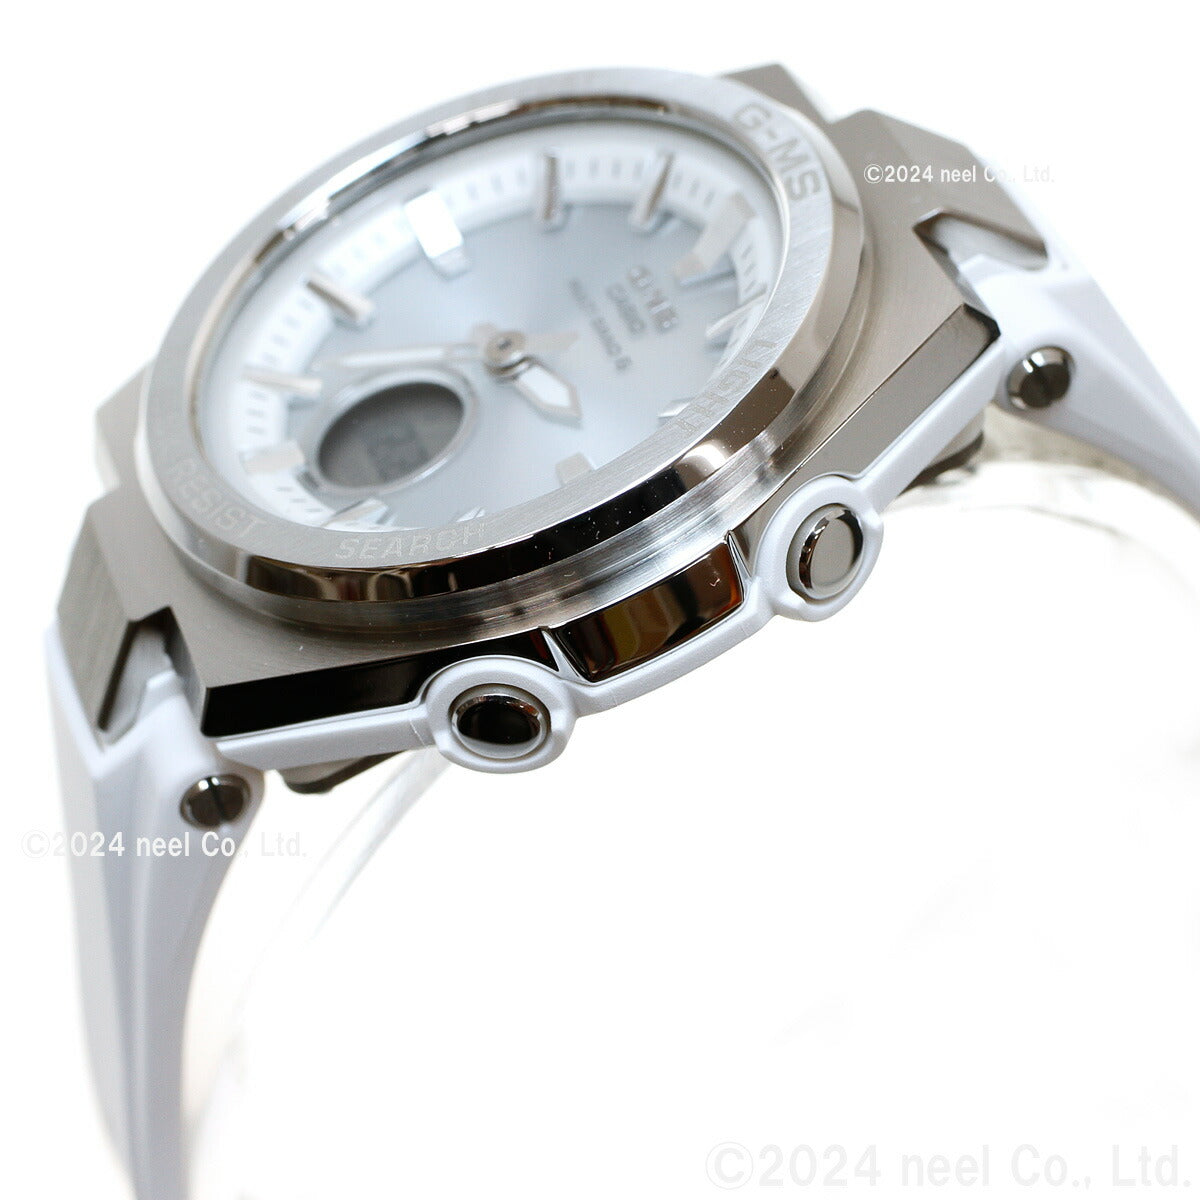 BABY-G カシオ ベビーG レディース G-MS 電波 ソーラー 腕時計 タフソーラー MSG-W200-7AJF